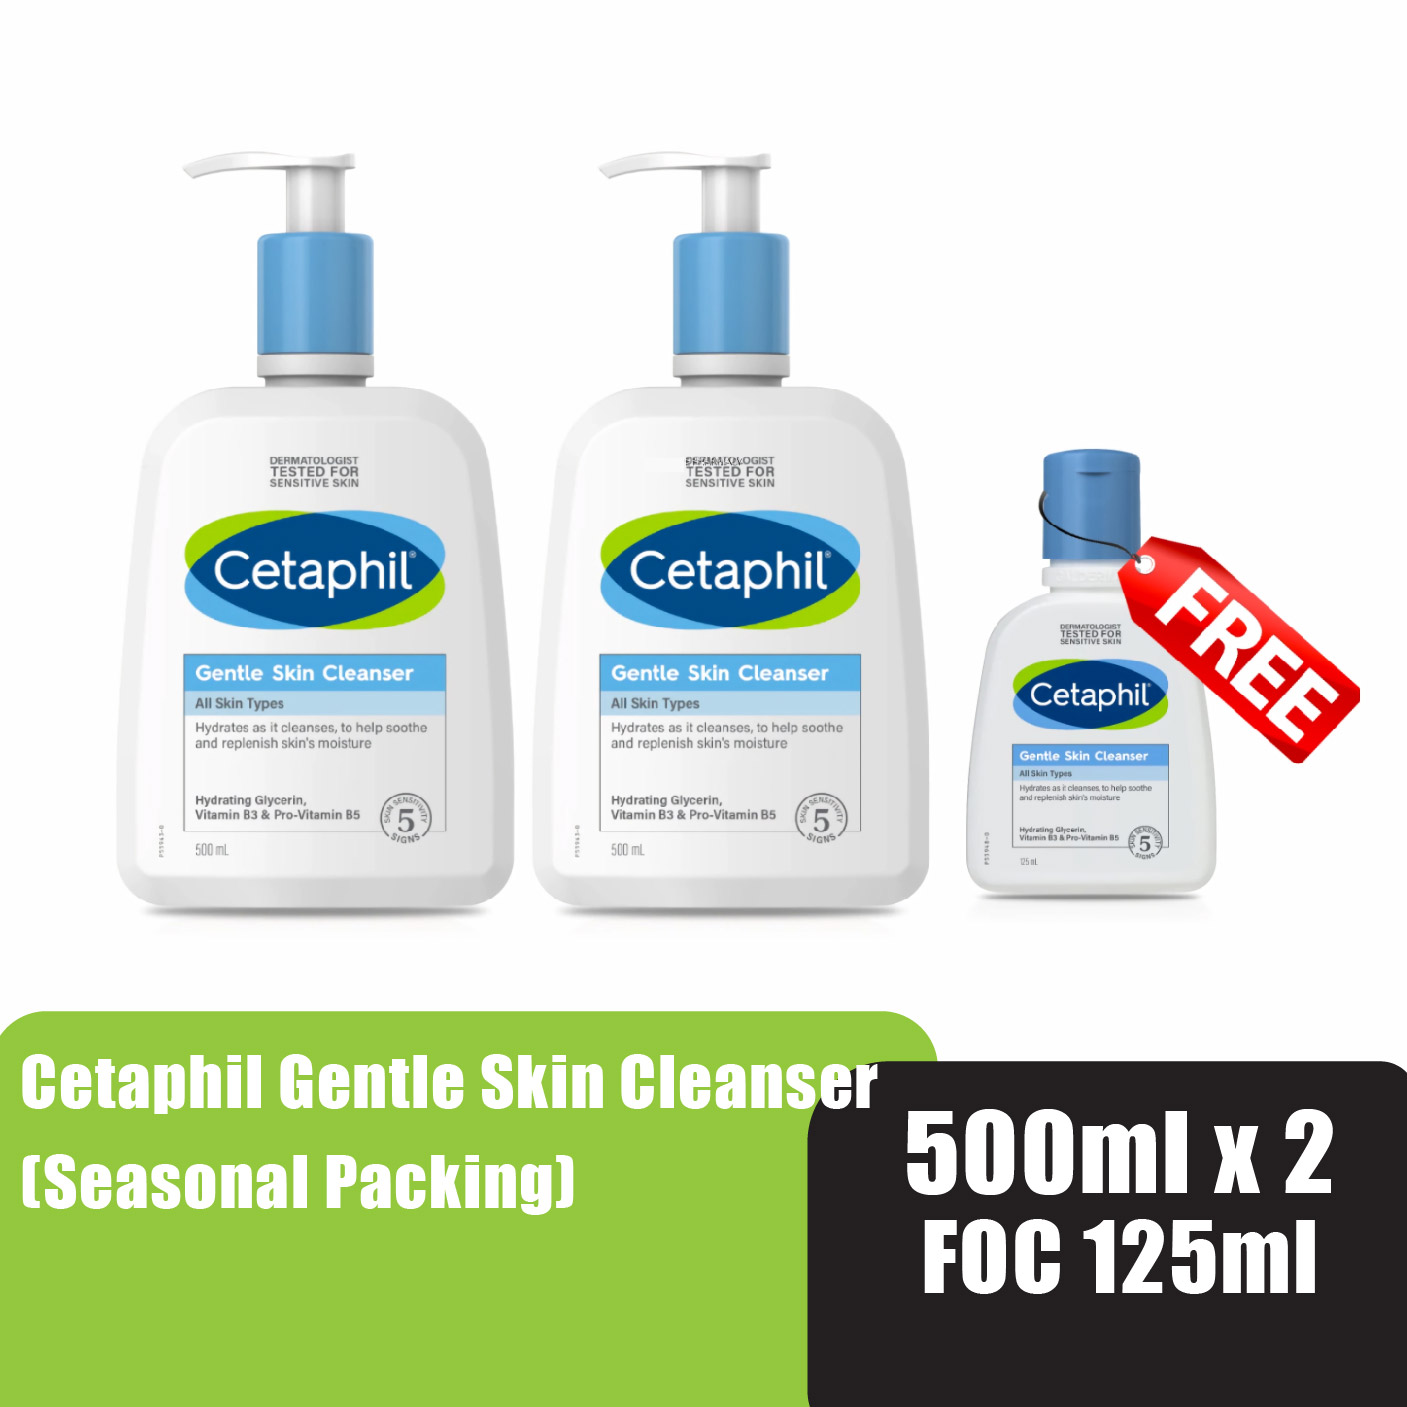 Cetaphil Gentle Skin Cleanser 500ml x 2 foc 125ml (Seasonal Packing)